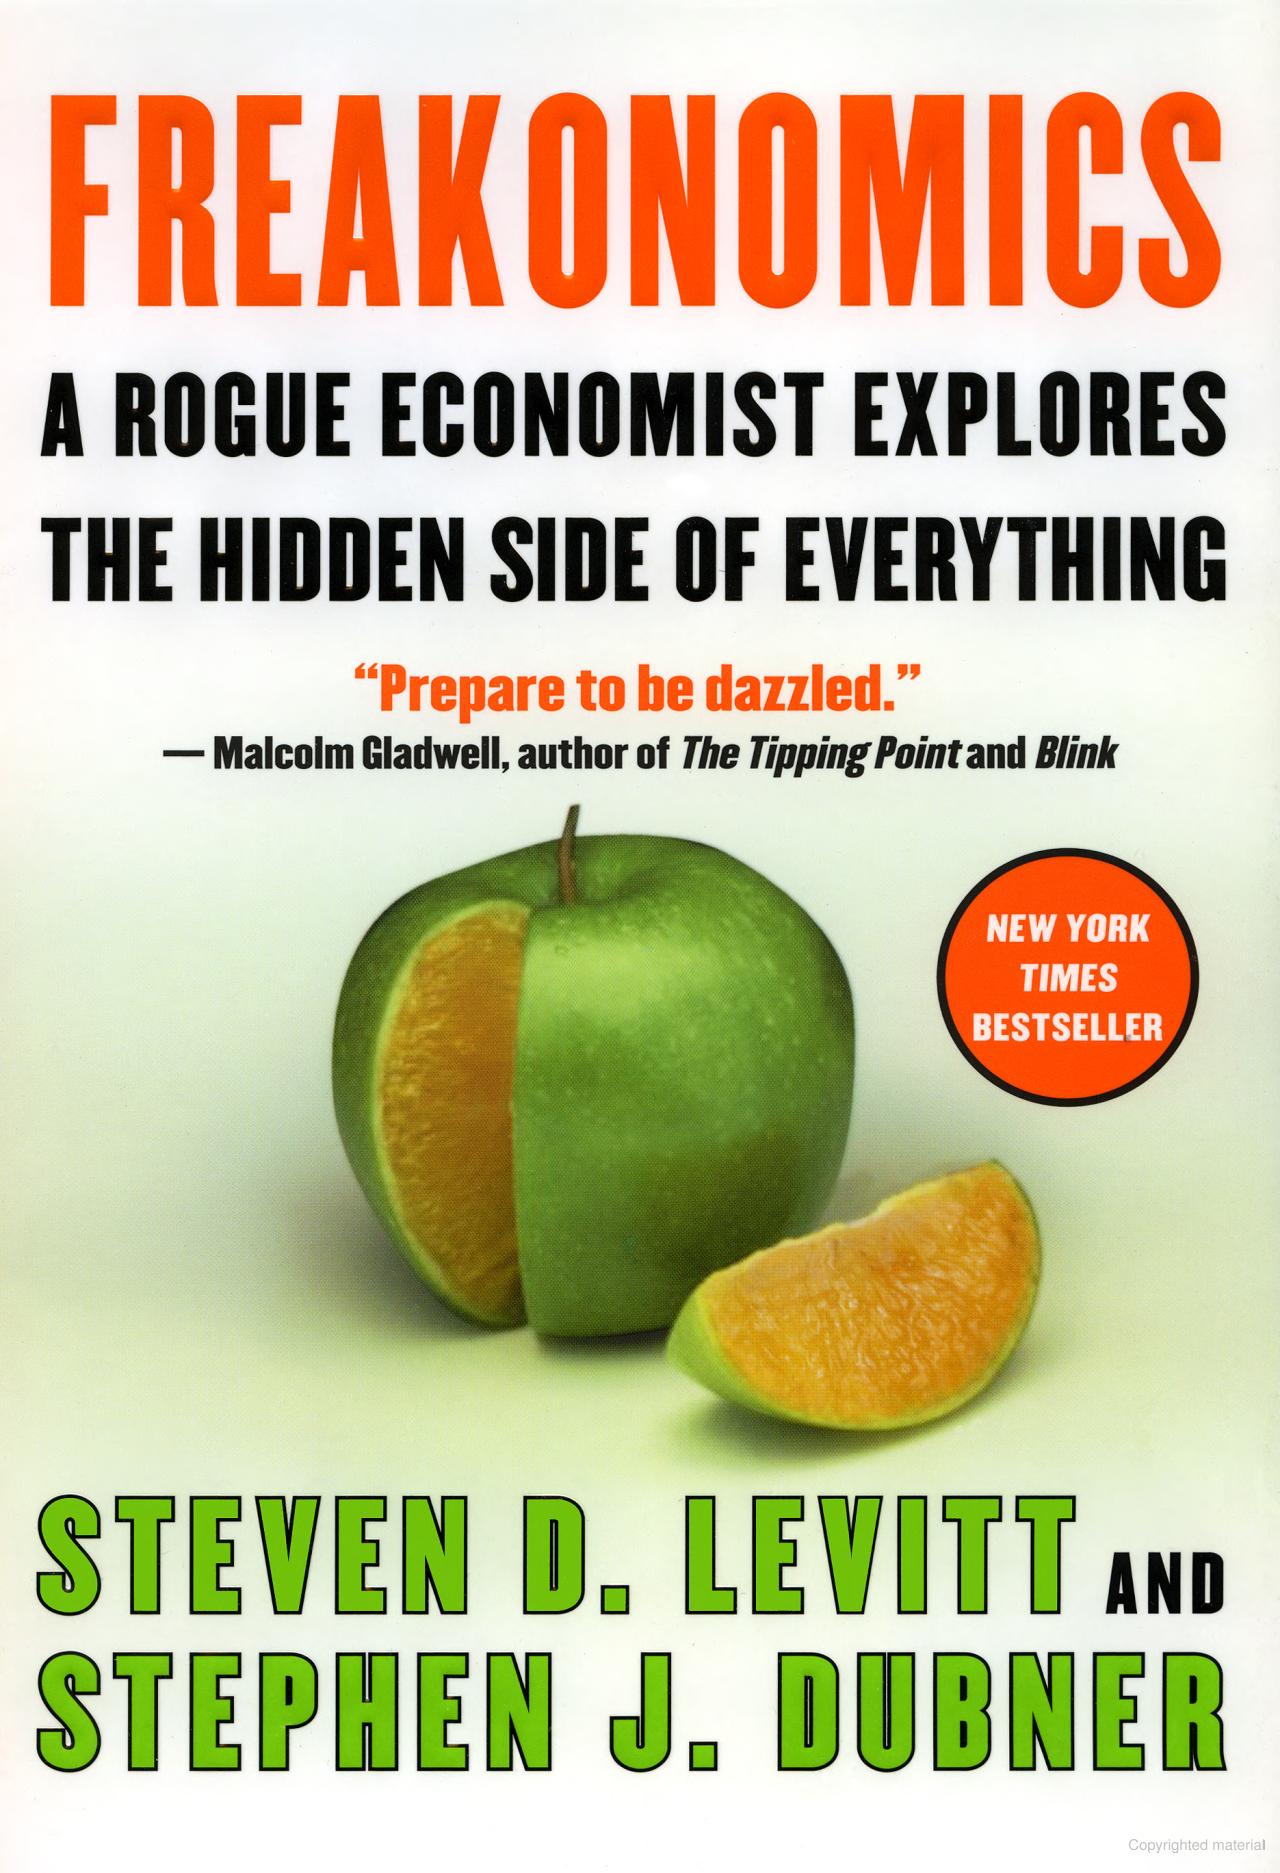 Steven D. Levitt, Stephen J. Dubner: Freakonomics (Hardcover, 2005, William Morrow)